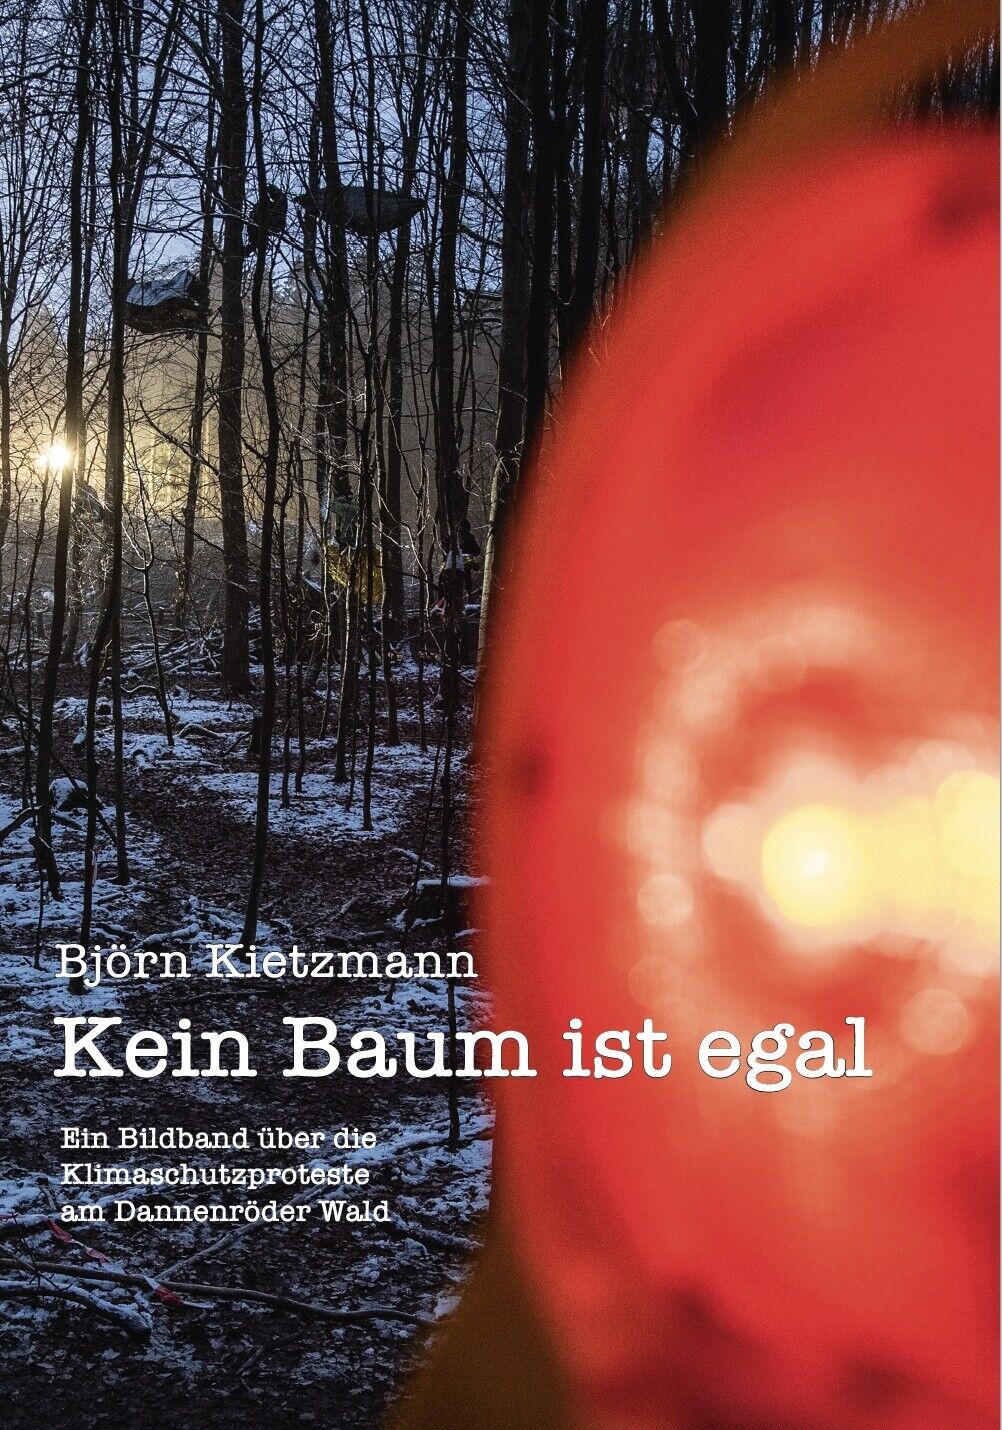 Kein Baum ist egal - Bildband über die Dannenröder Wald Proteste (Hardcover) - Björn Kietzmann, Carola Rackete